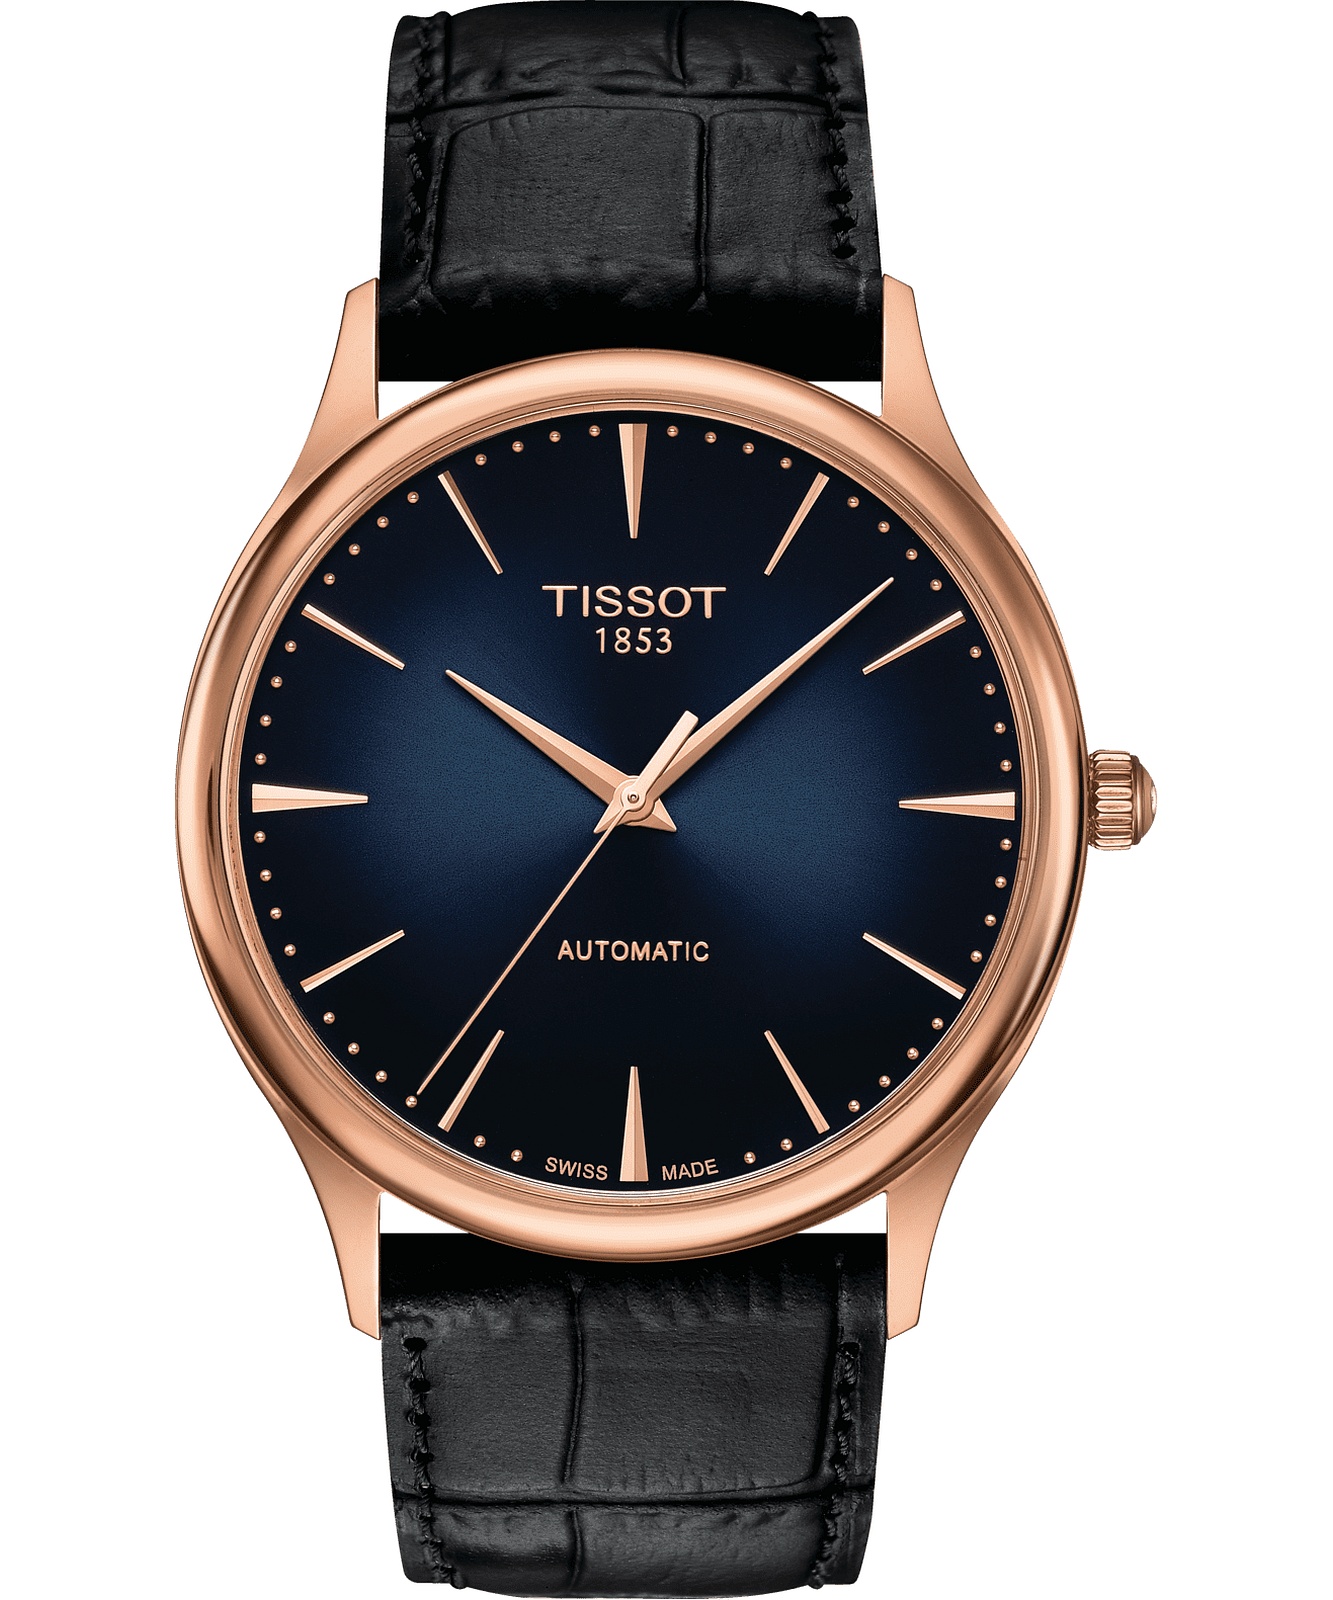 Tissot T926.407.76.041.00 - Excellence Watch • Watchard.com